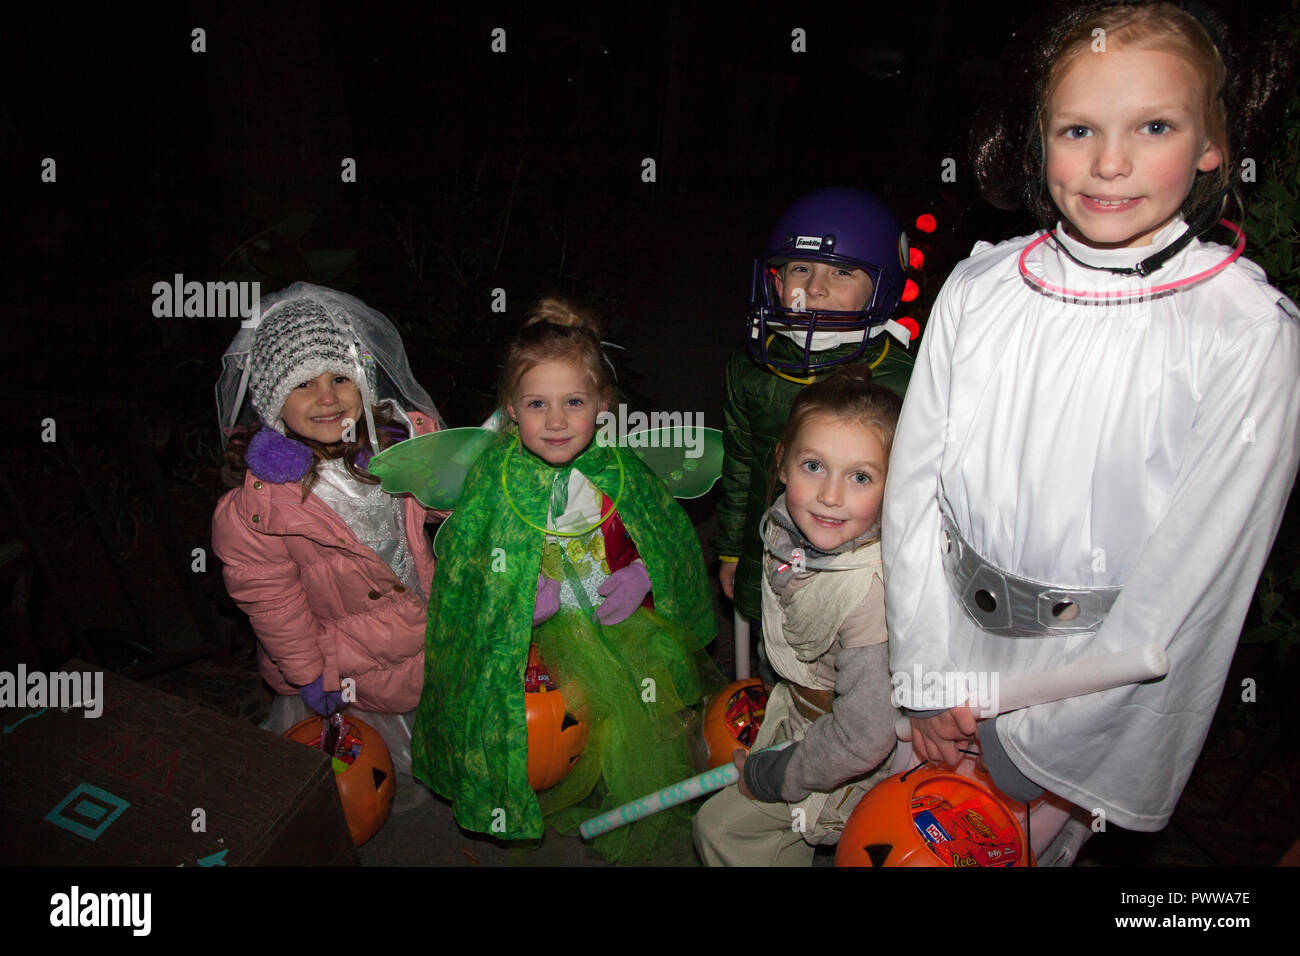 Grupo de jóvenes personas disfrazadas de Halloween Disfraces como princesa Leia, hada, Jedi Knight y jugador de fútbol. St Paul MN Minnesota EE.UU. Foto de stock